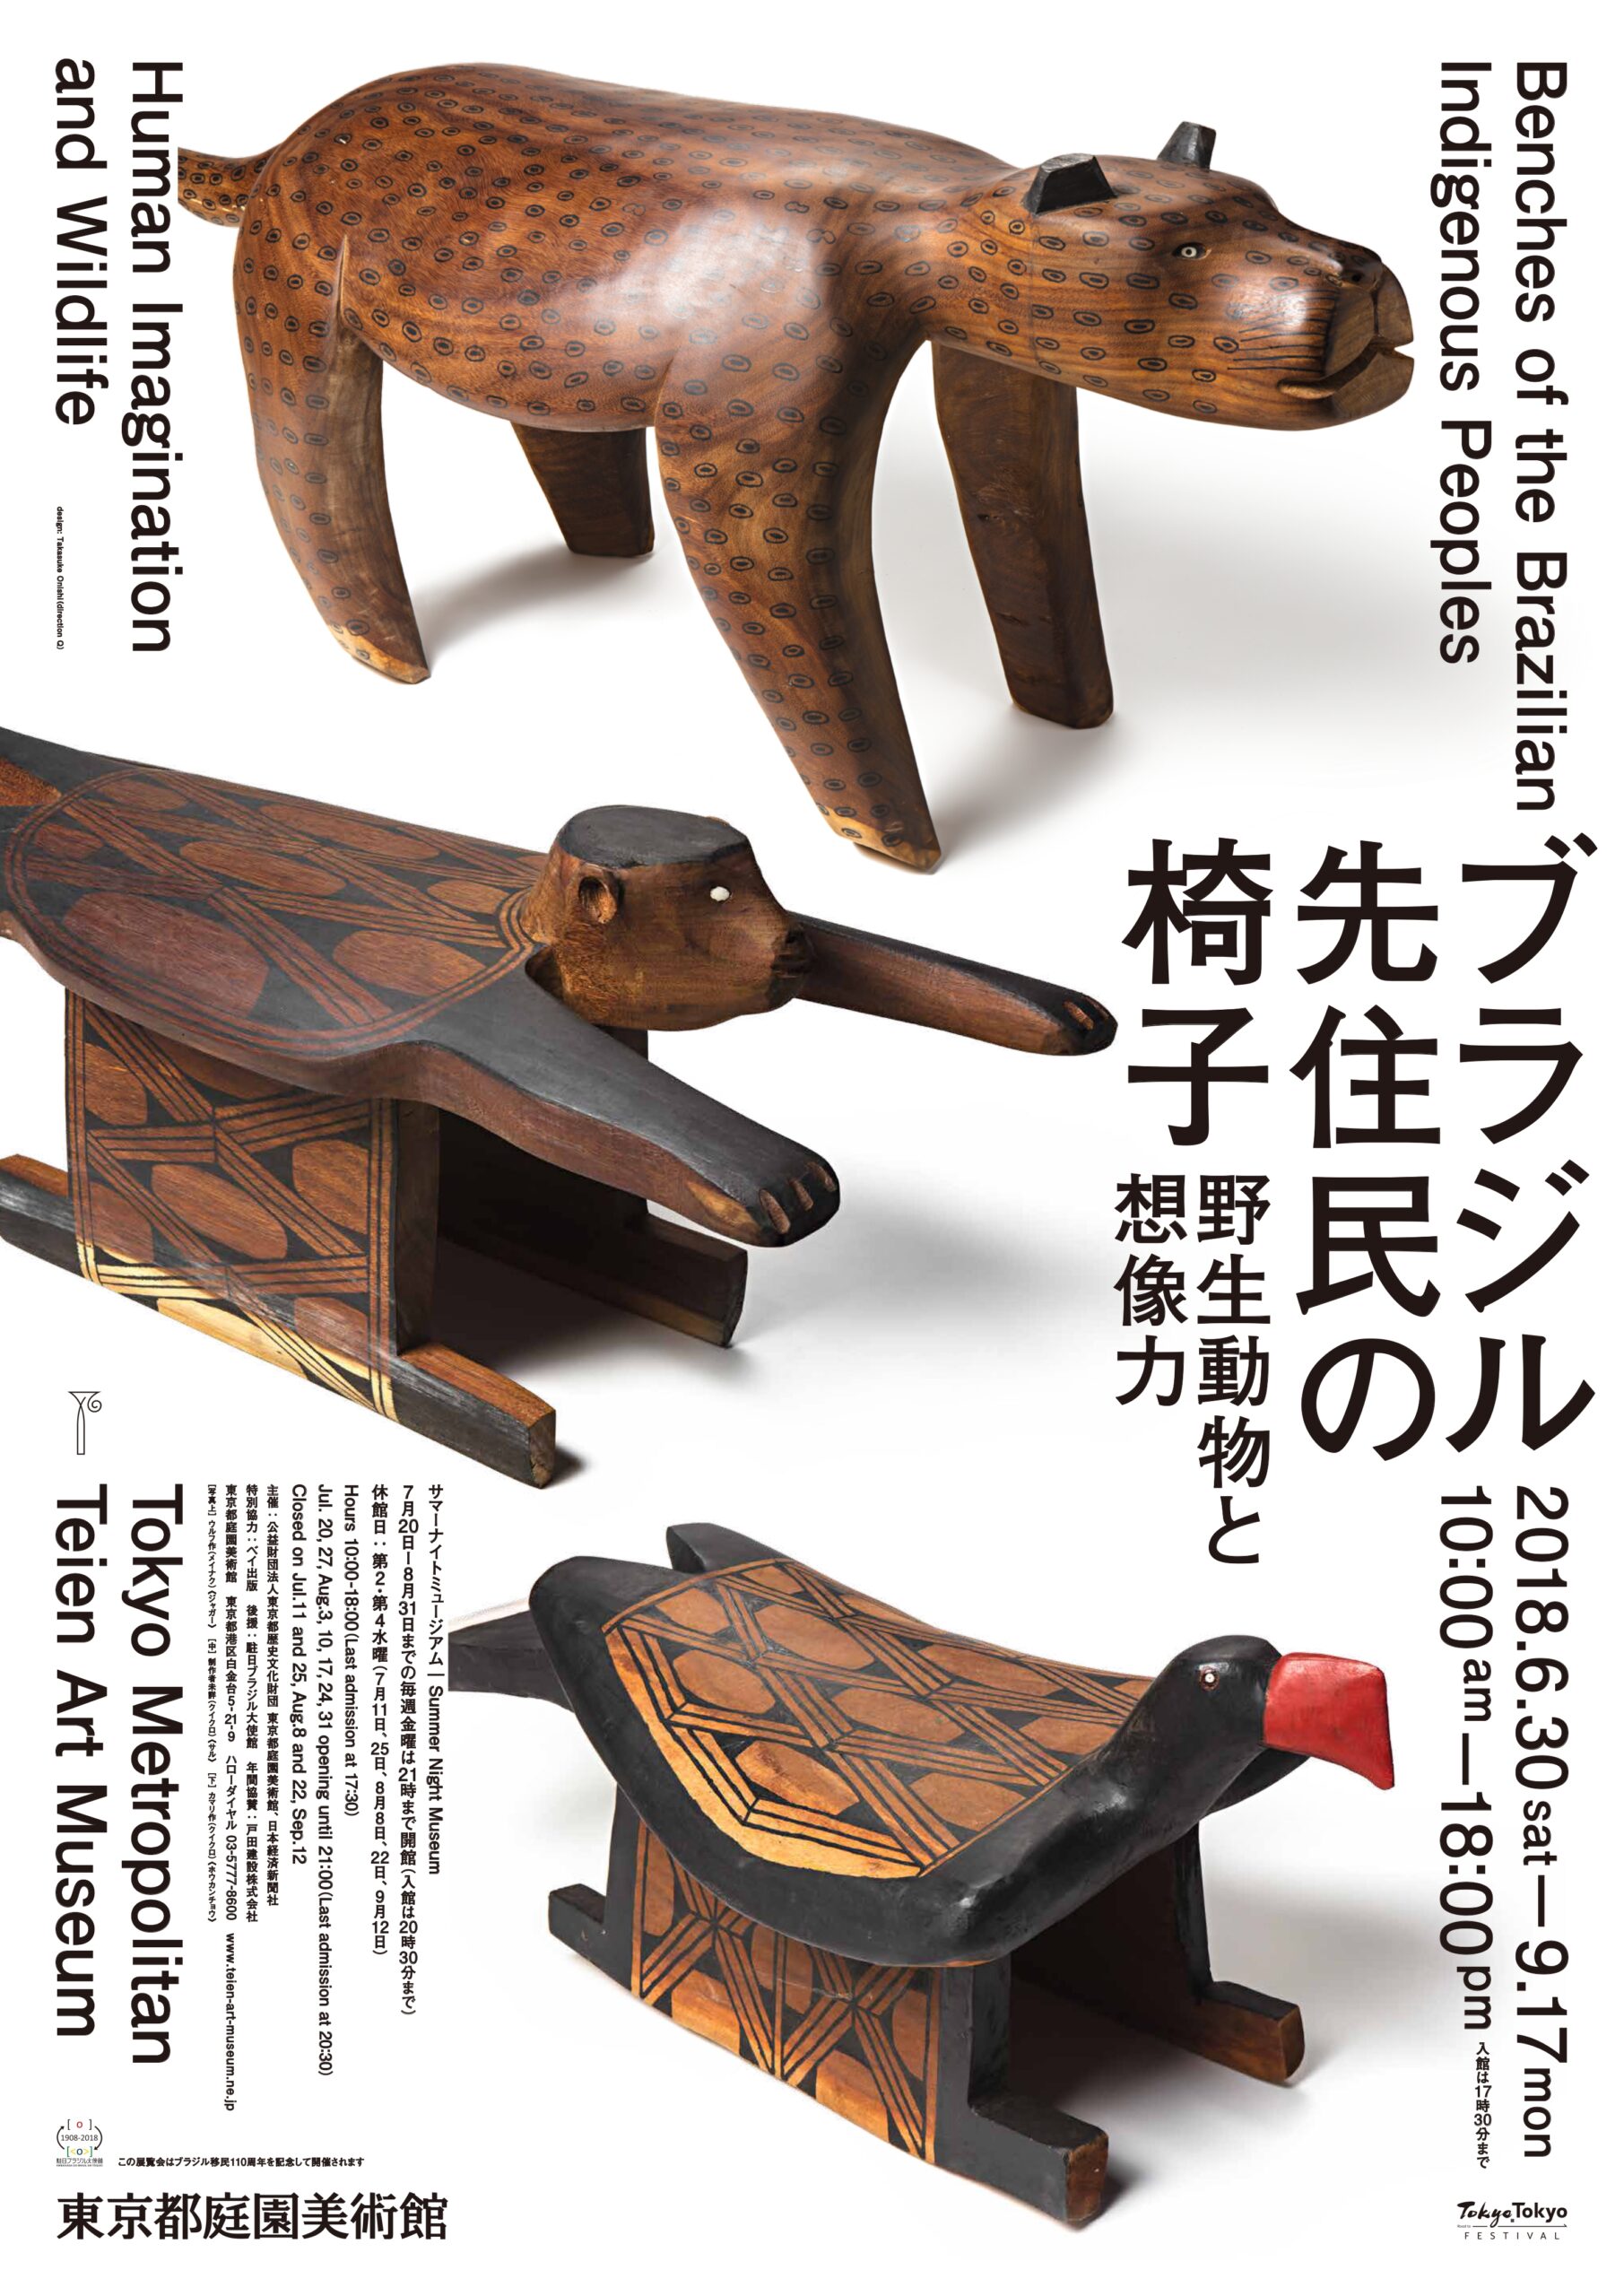 『あそび』-東京都庭園美術館「ブラジル先住民の椅子 野生動物と想像力」展のための-